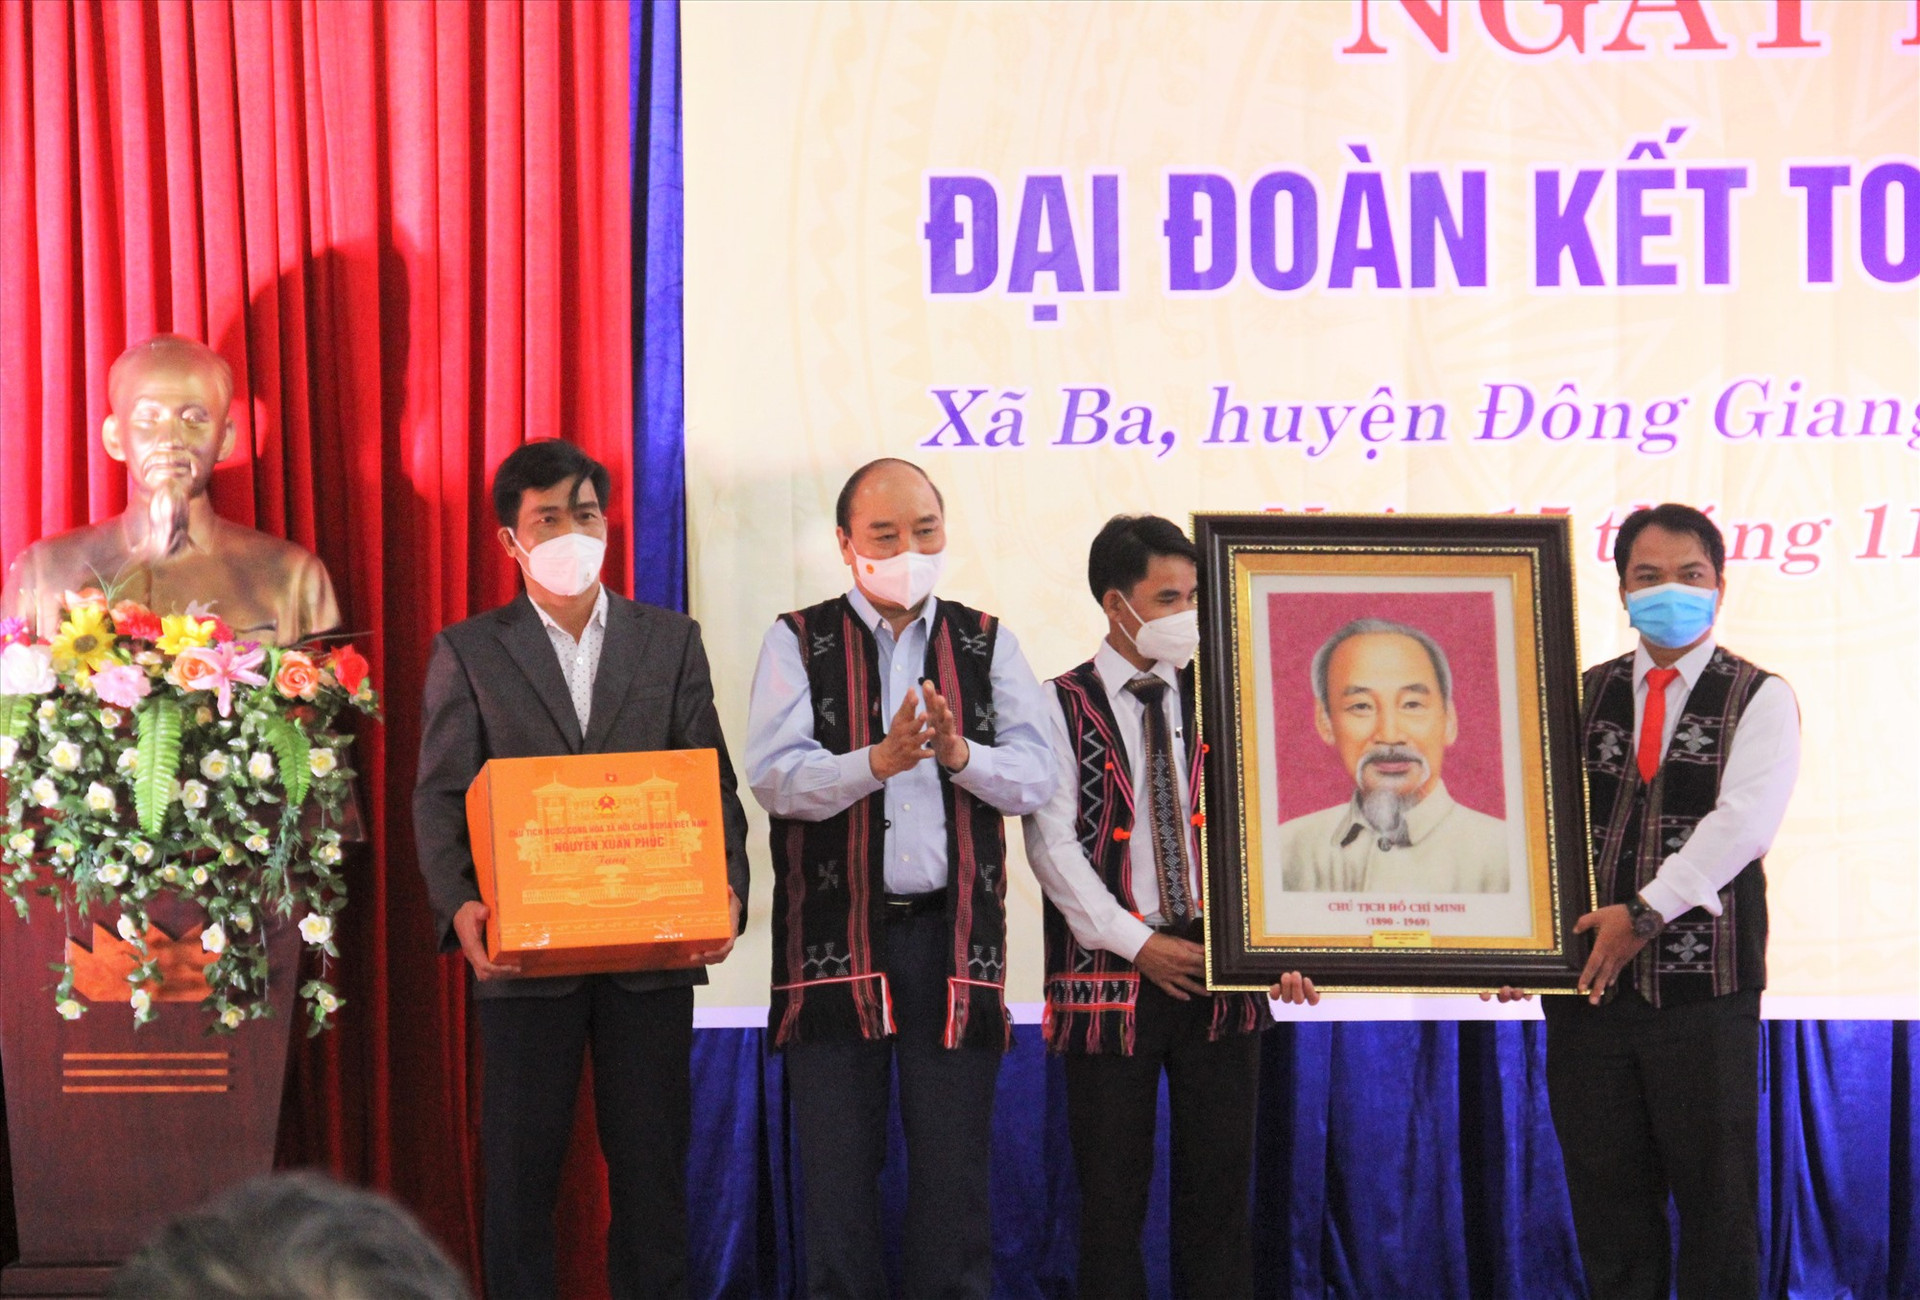 Thay mặt đoàn công tác, Chủ tịch nước Nguyễn Xuân Phúc trao quà tặng chân dung Chủ tịch Hồ Chí Minh cho Đảng bộ, chính quyền xã Ba. Ảnh: N.V